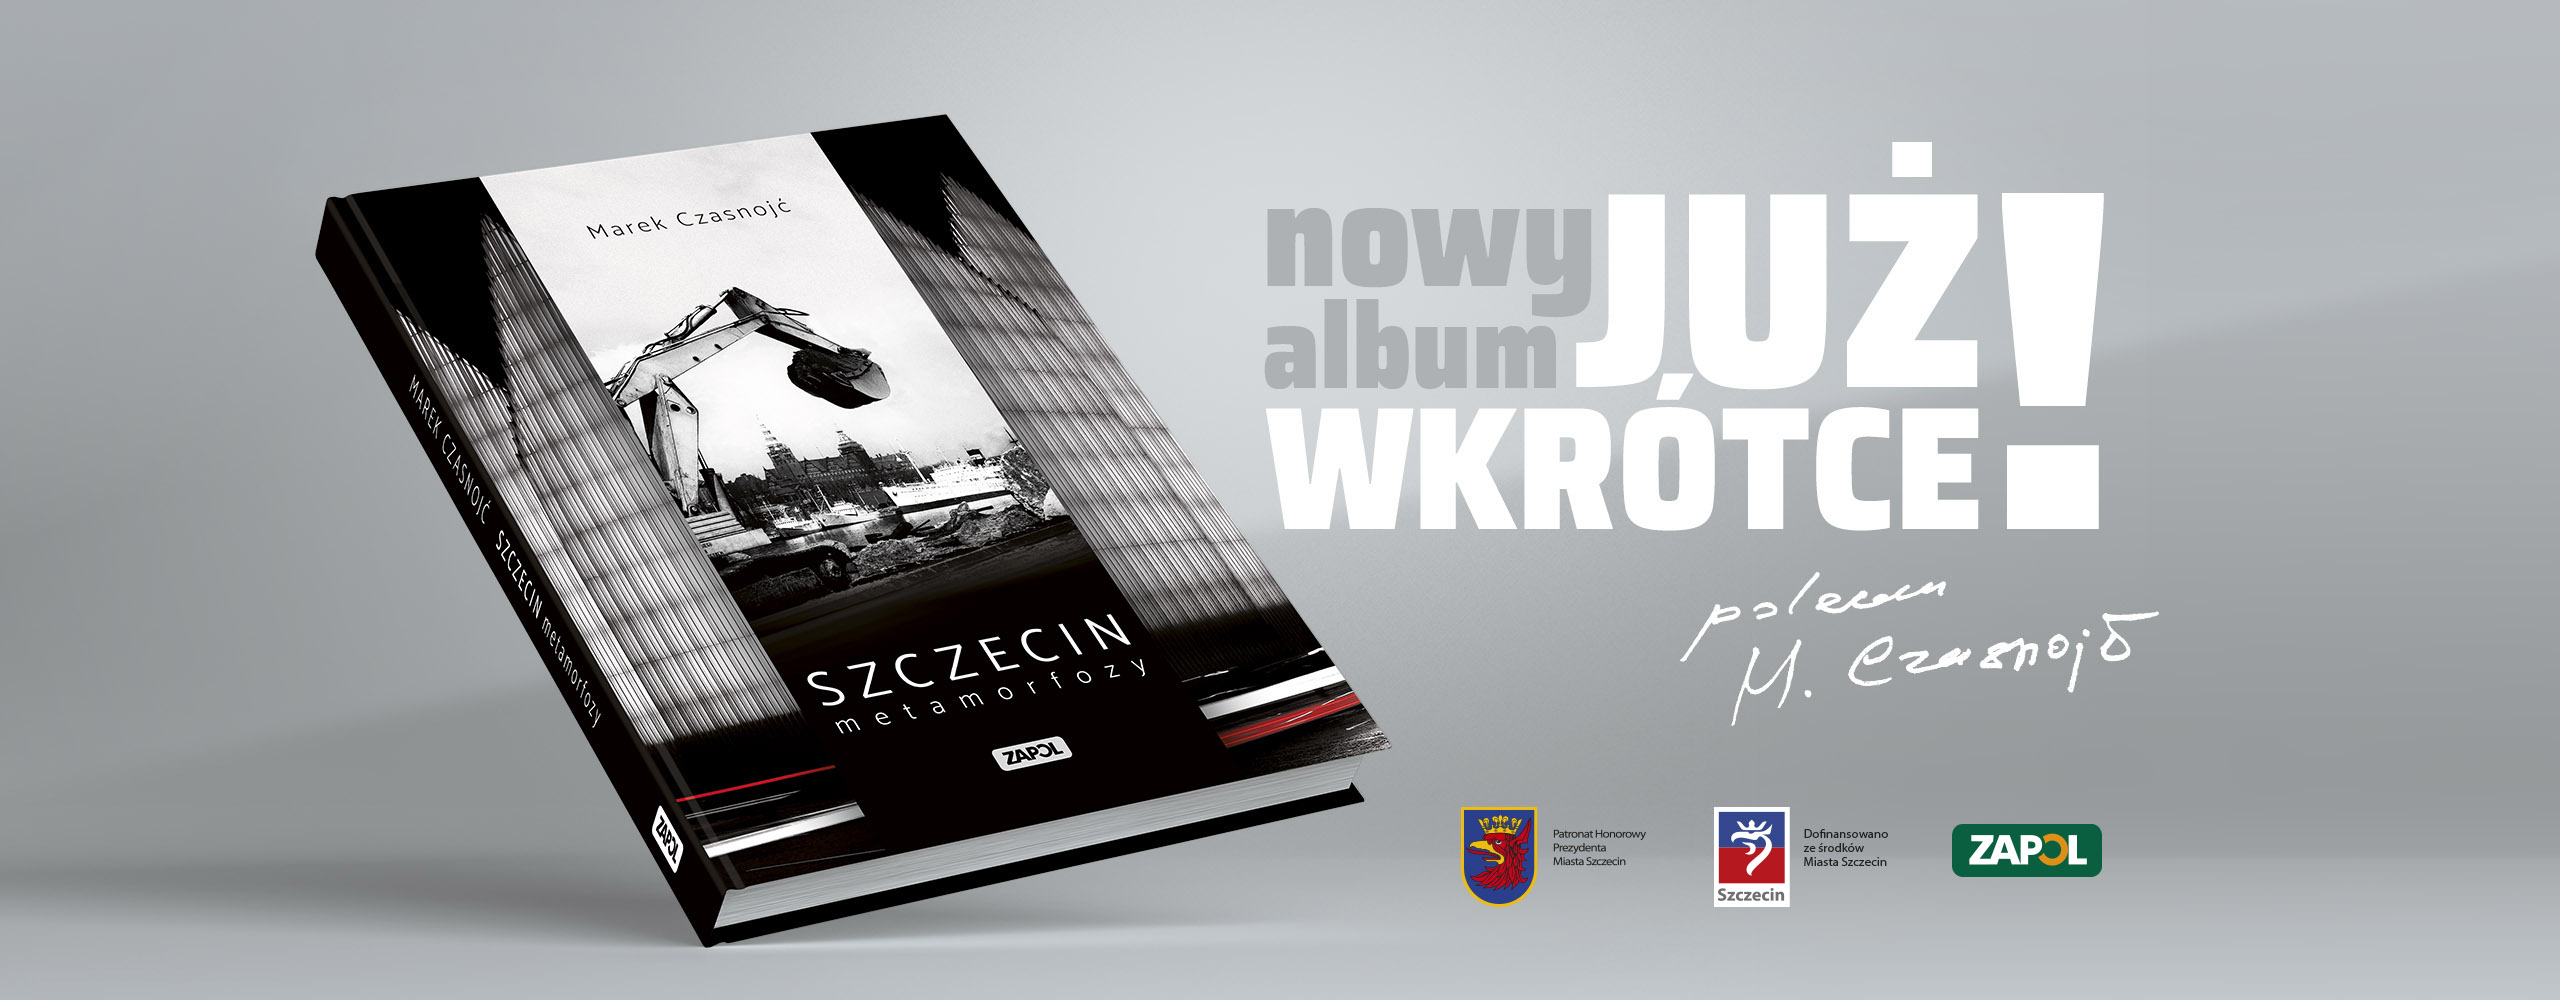 Marek Czasnojć album Metamorfozy 2020